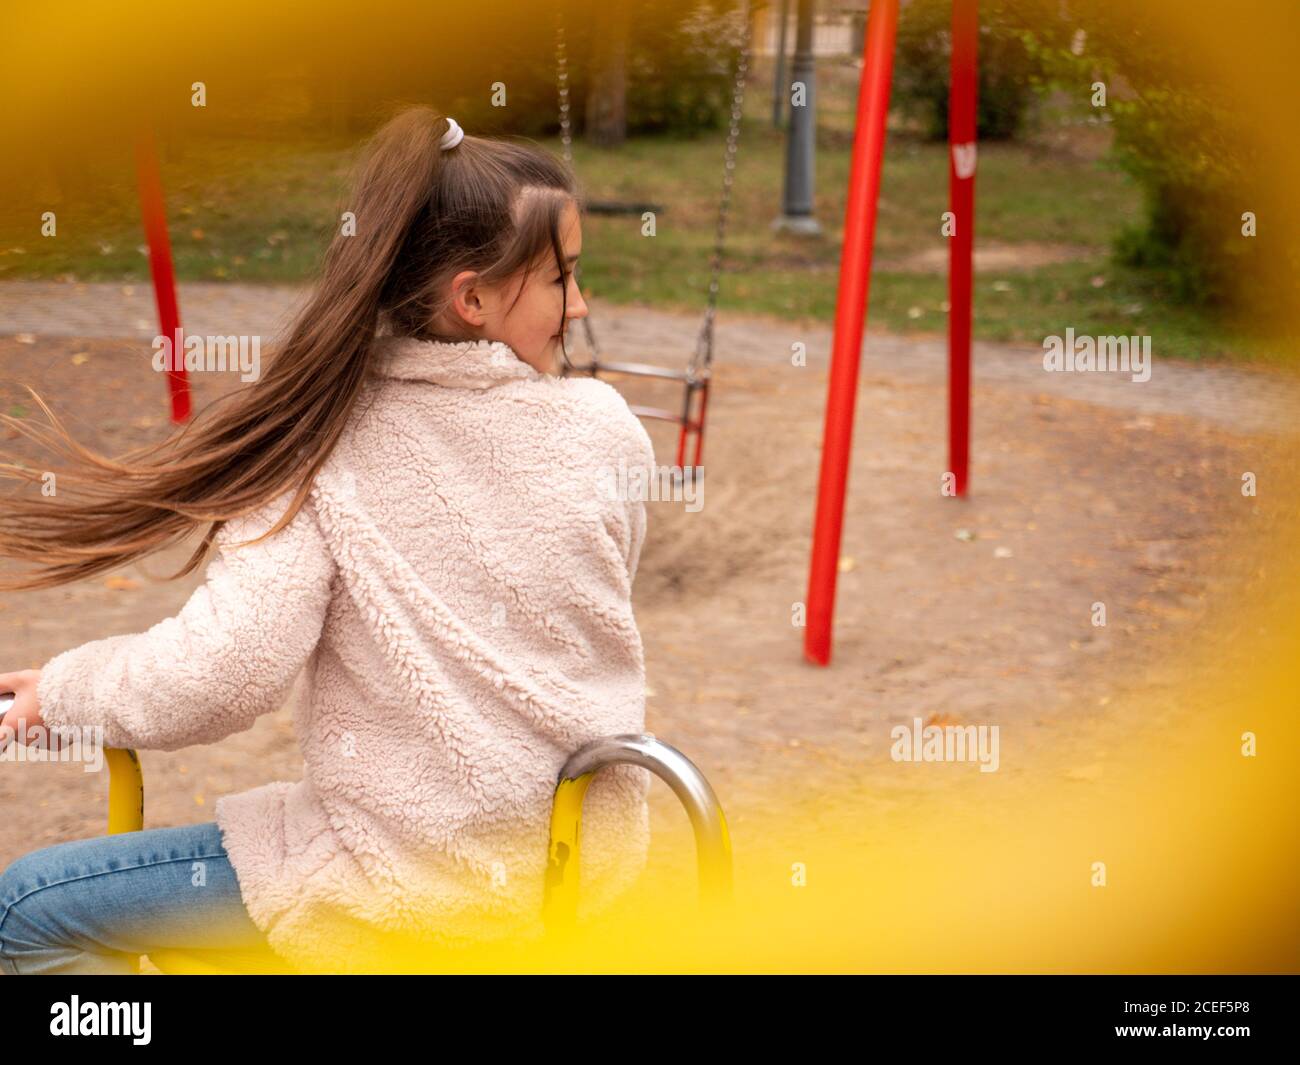 Vea a través de las barandillas a una joven adolescente sonriente feliz en un abrigo de piel sintética y con cola de ponytail larga girando en un feliz recorrido en el patio de juegos para niños. Foto de stock